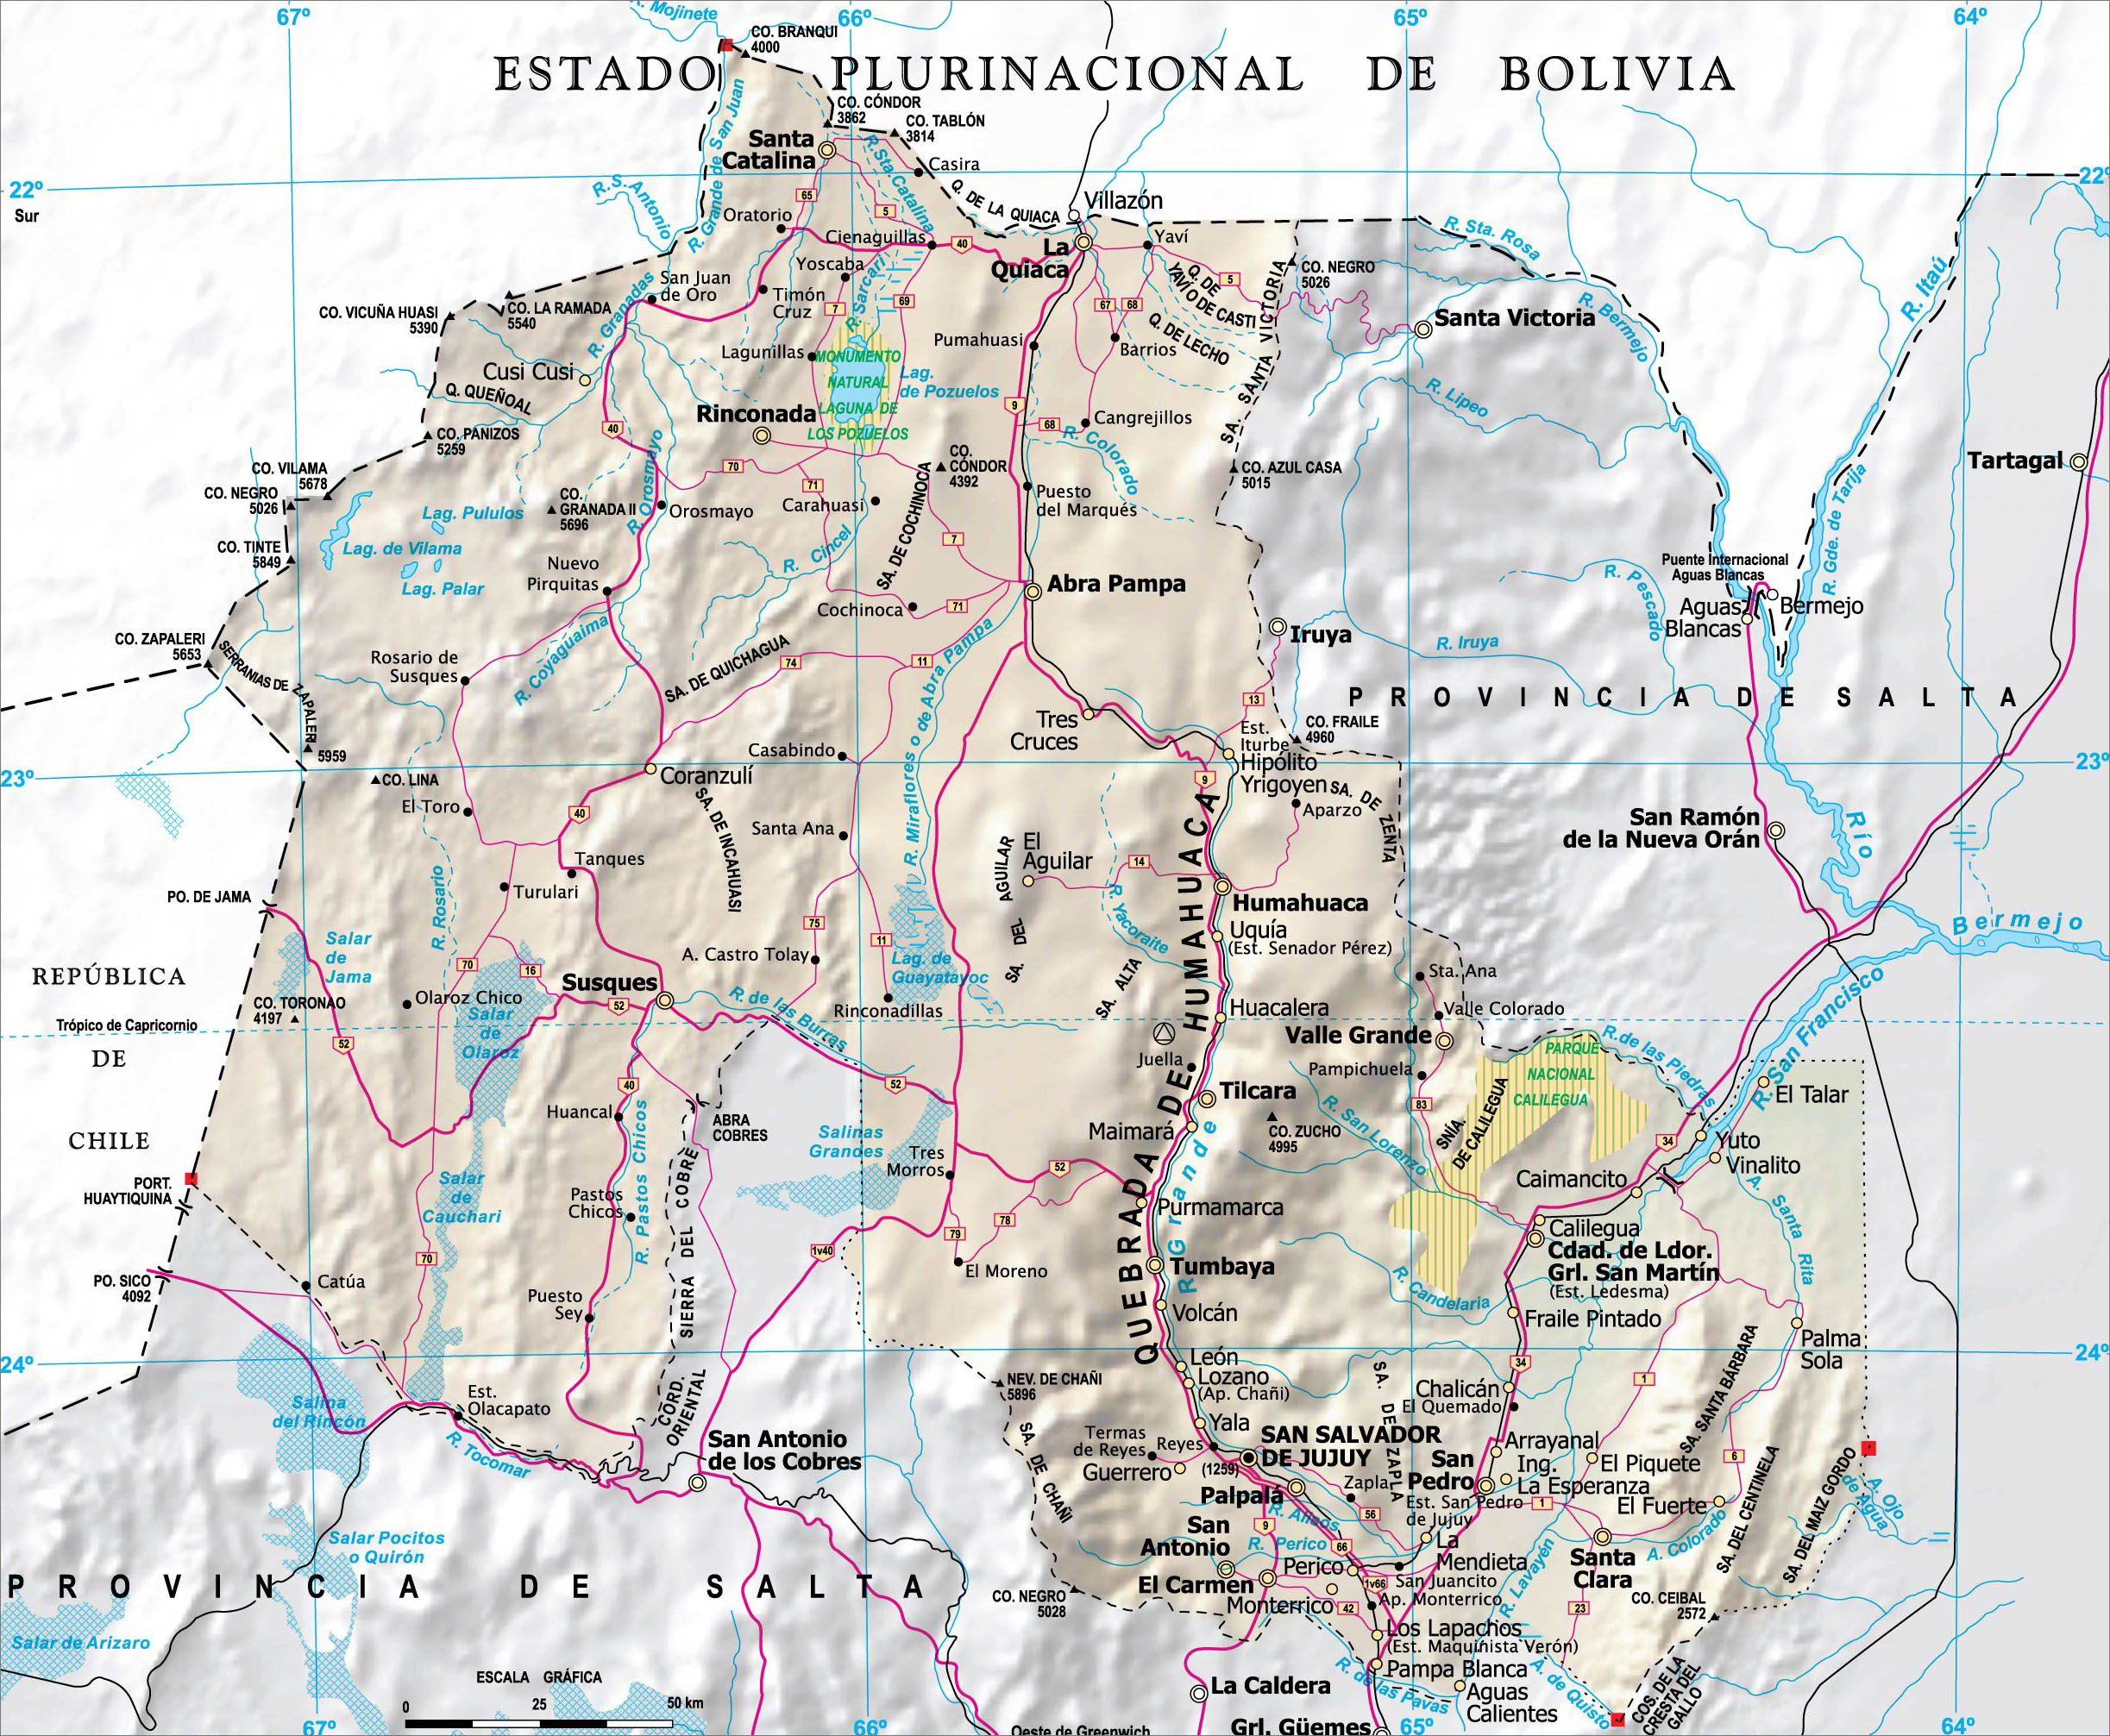 下面是2014年最新的jujuy,所处国家:阿根廷.地图图片如下图片